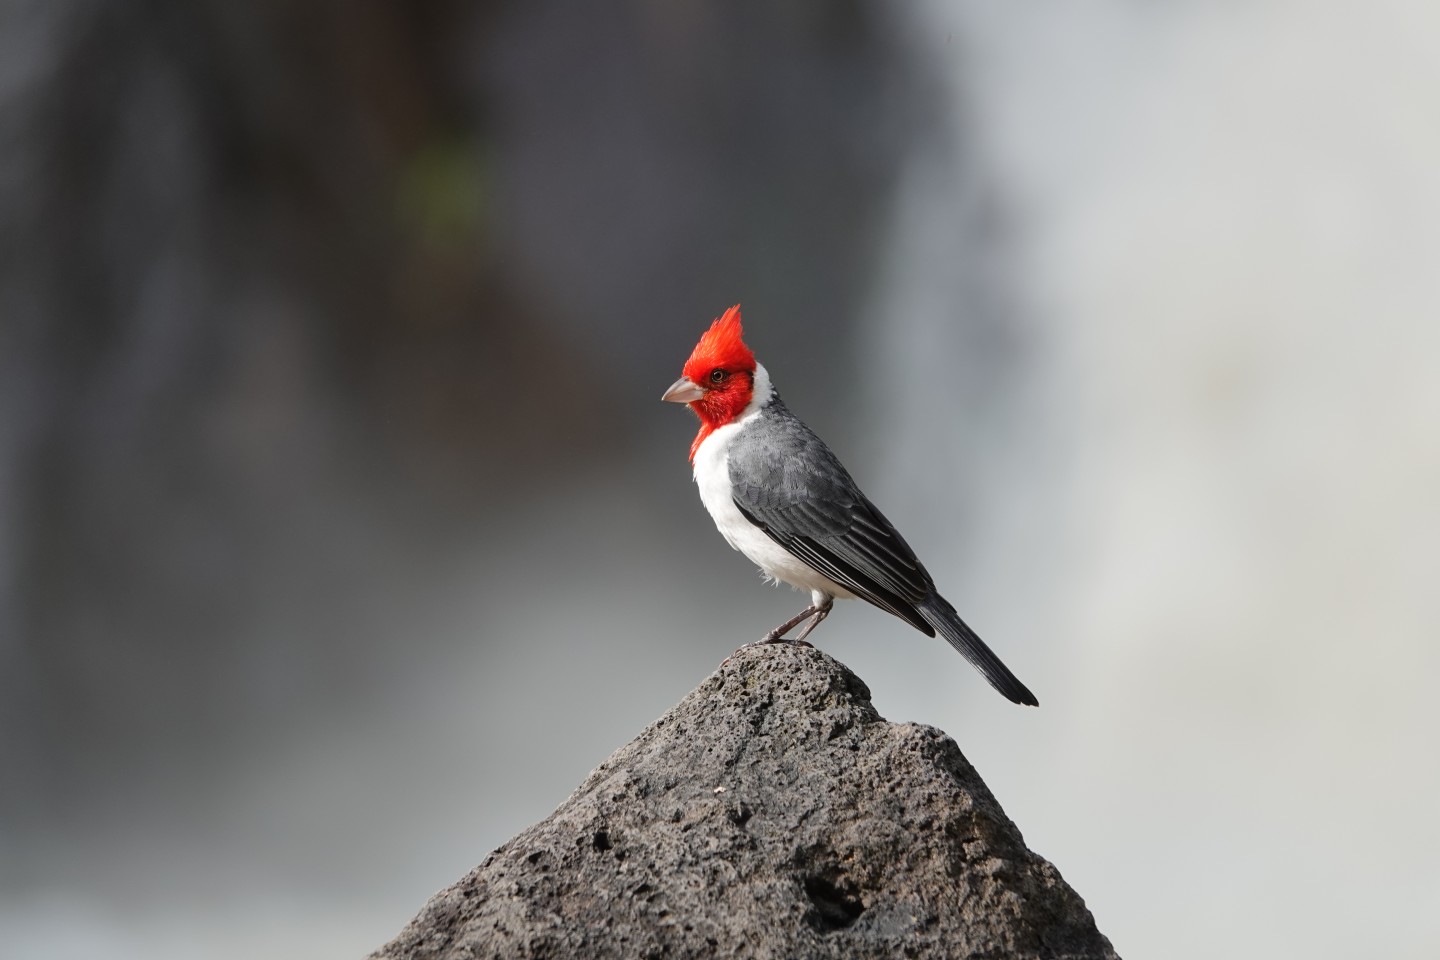 "Краснохохлая кардиналовая овсянка". Водопад создал красивый нейтральный фон для потрясающего цвета этой птицы. Фото: David Miller